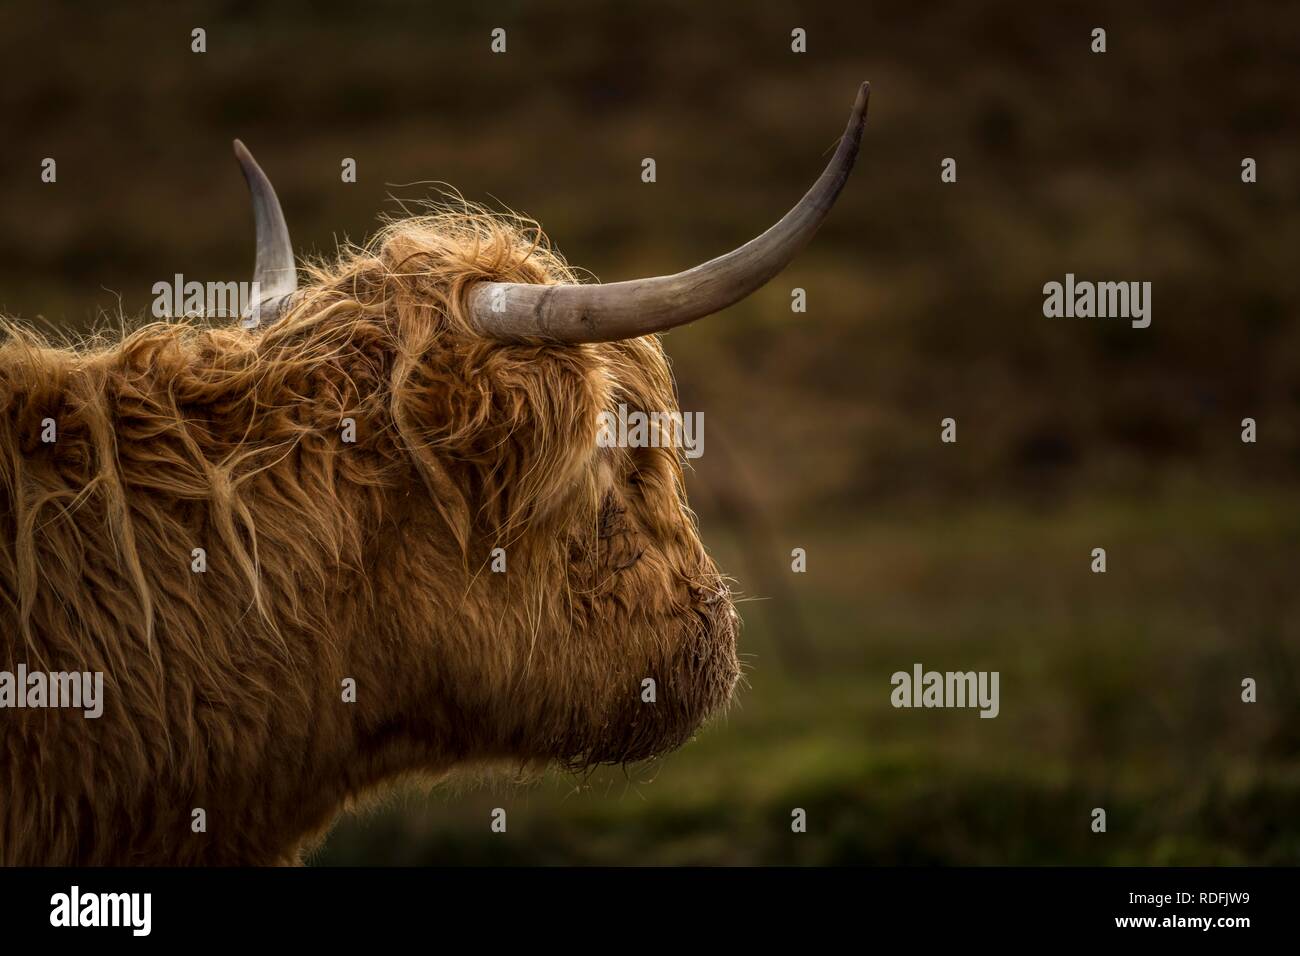 Scottish Highland Cattle (Bos taurus), animal portrait, Scotland, United Kingdom Stock Photo